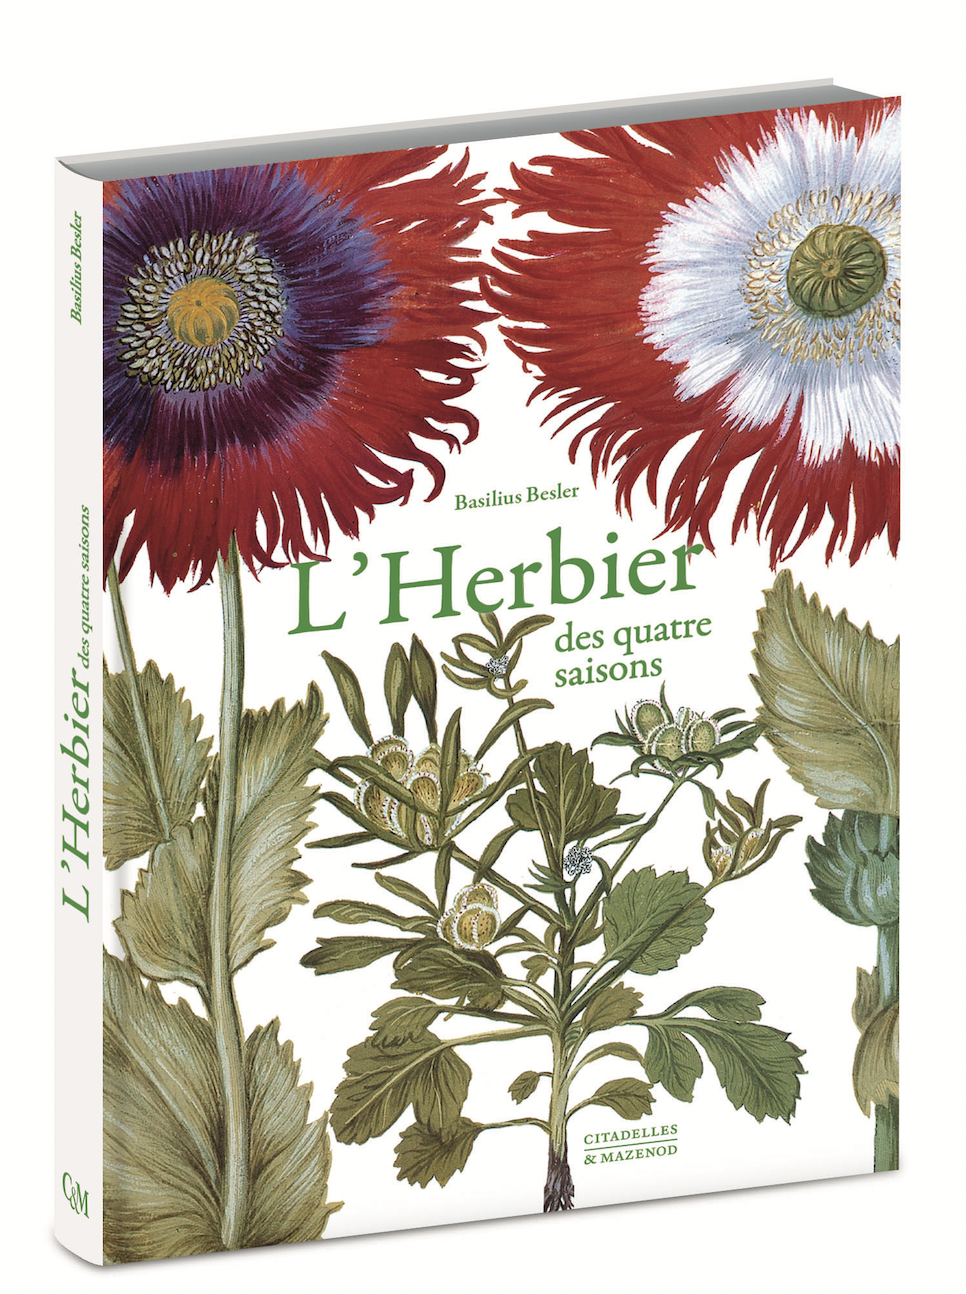 Citadelles & Mazenod - L'Herbier des quatre saisons - L'Herbier -des-quatre-saisons